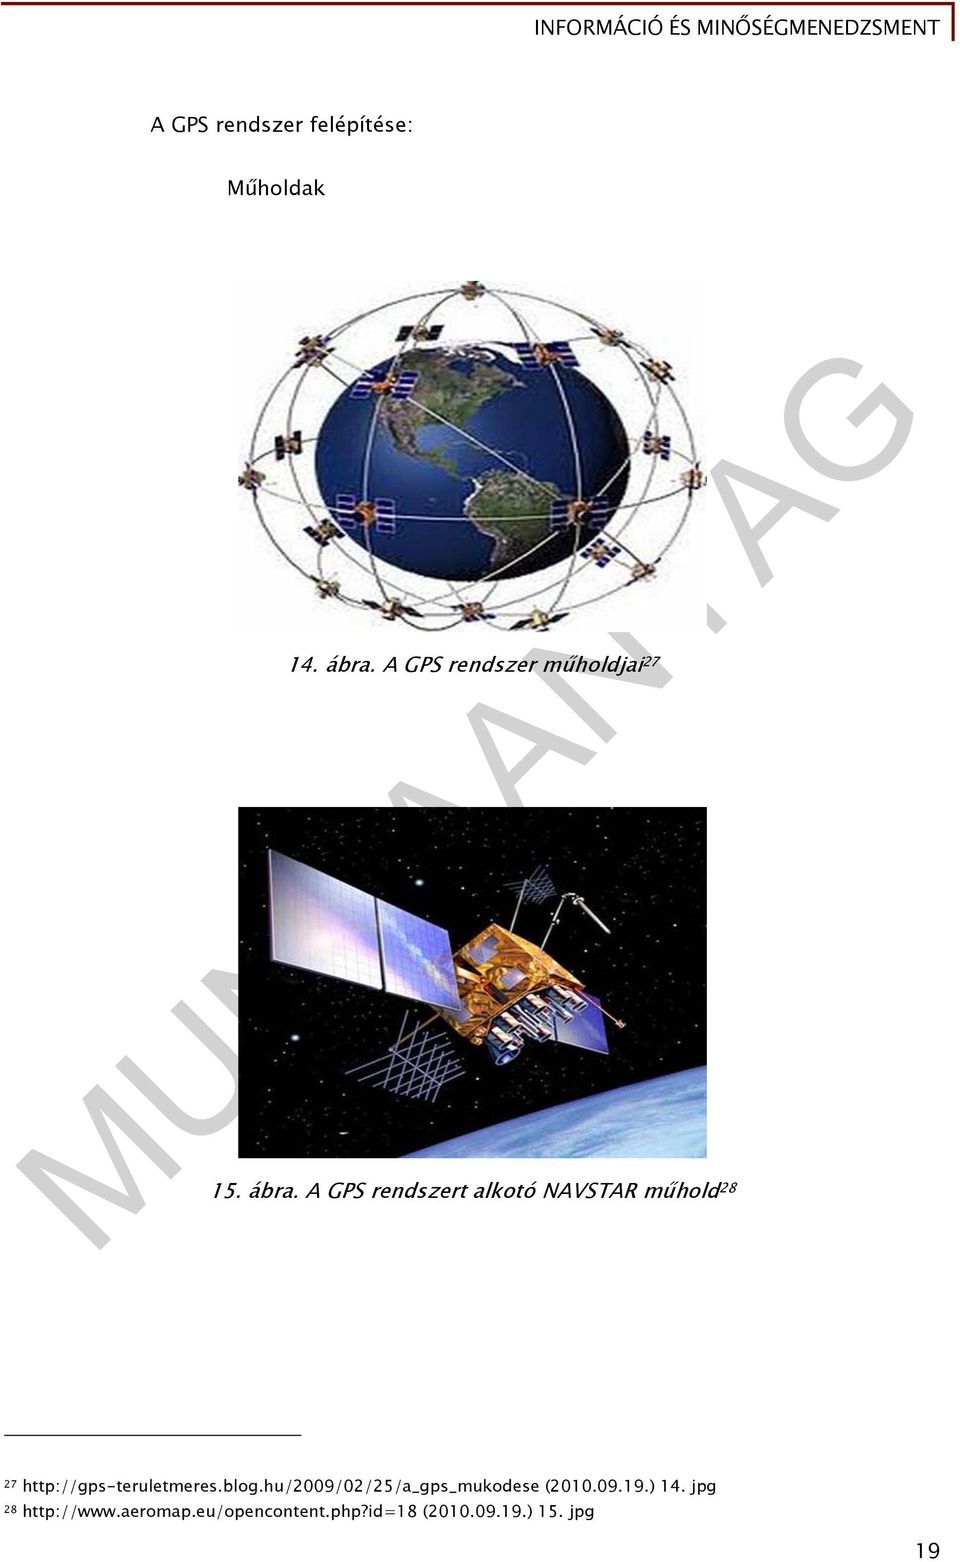 A GPS rendszert alkotó NAVSTAR műhold 28 27 http://gps-teruletmeres.